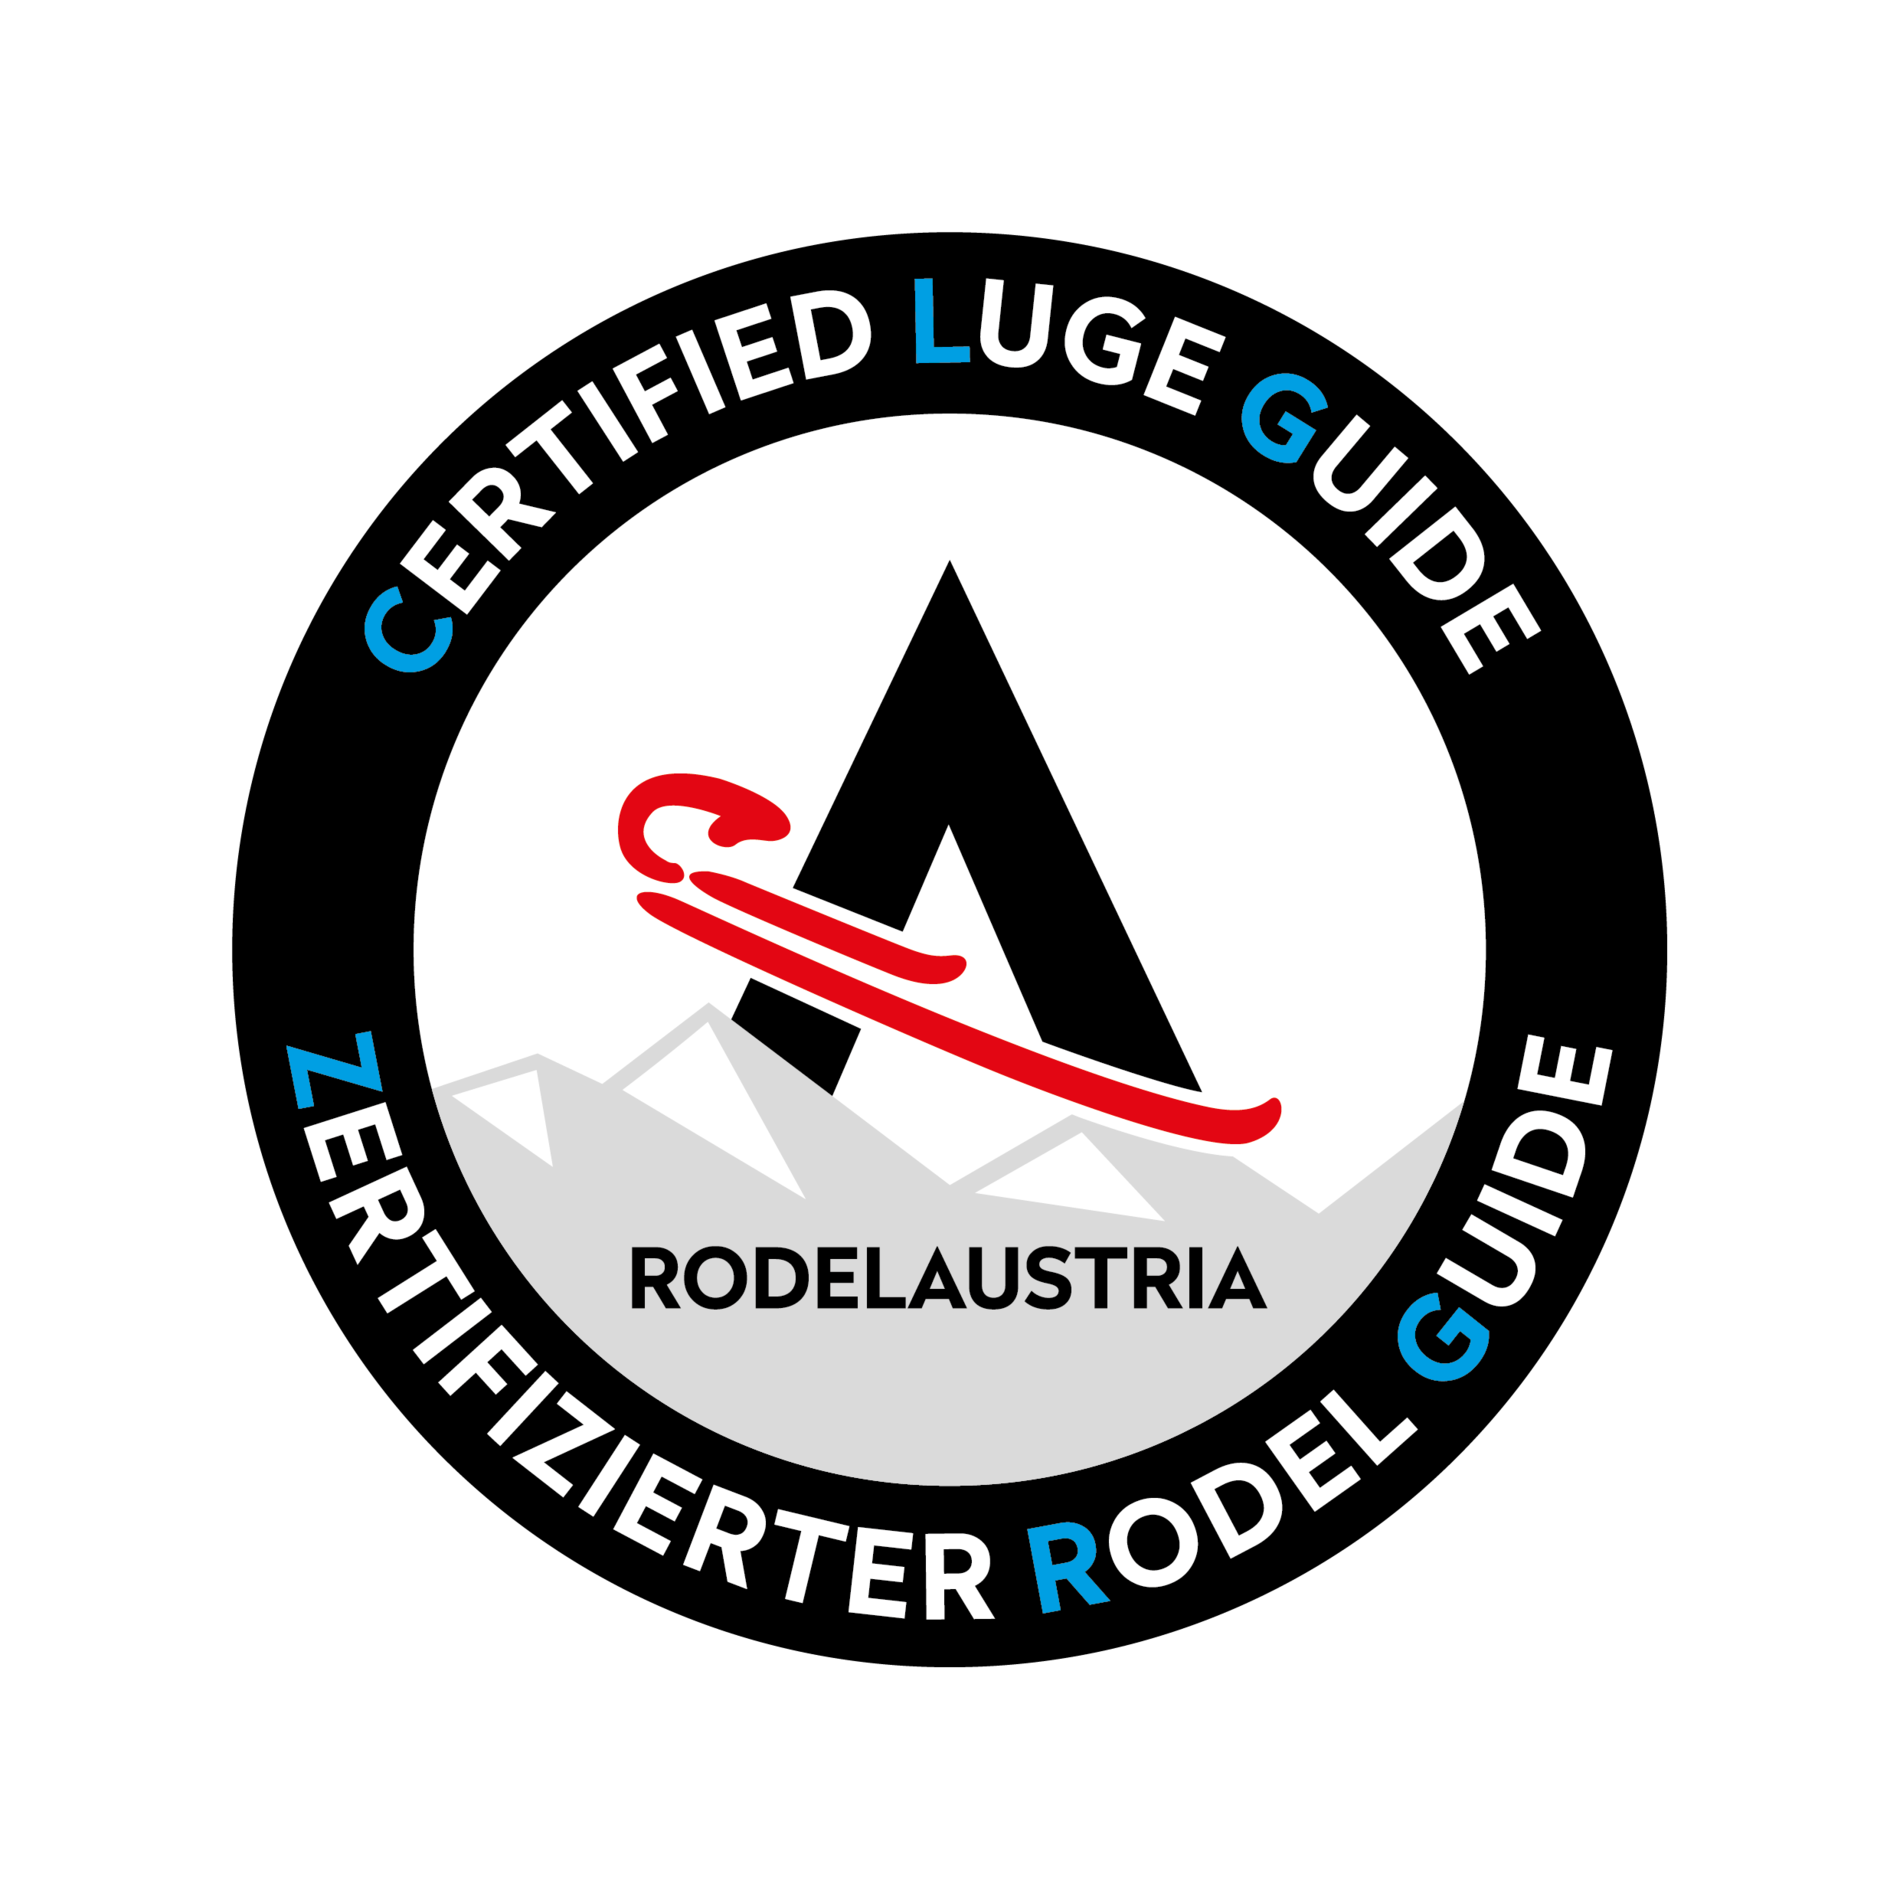 Zertifizierter Rodel Guide / Certified Luge Guide